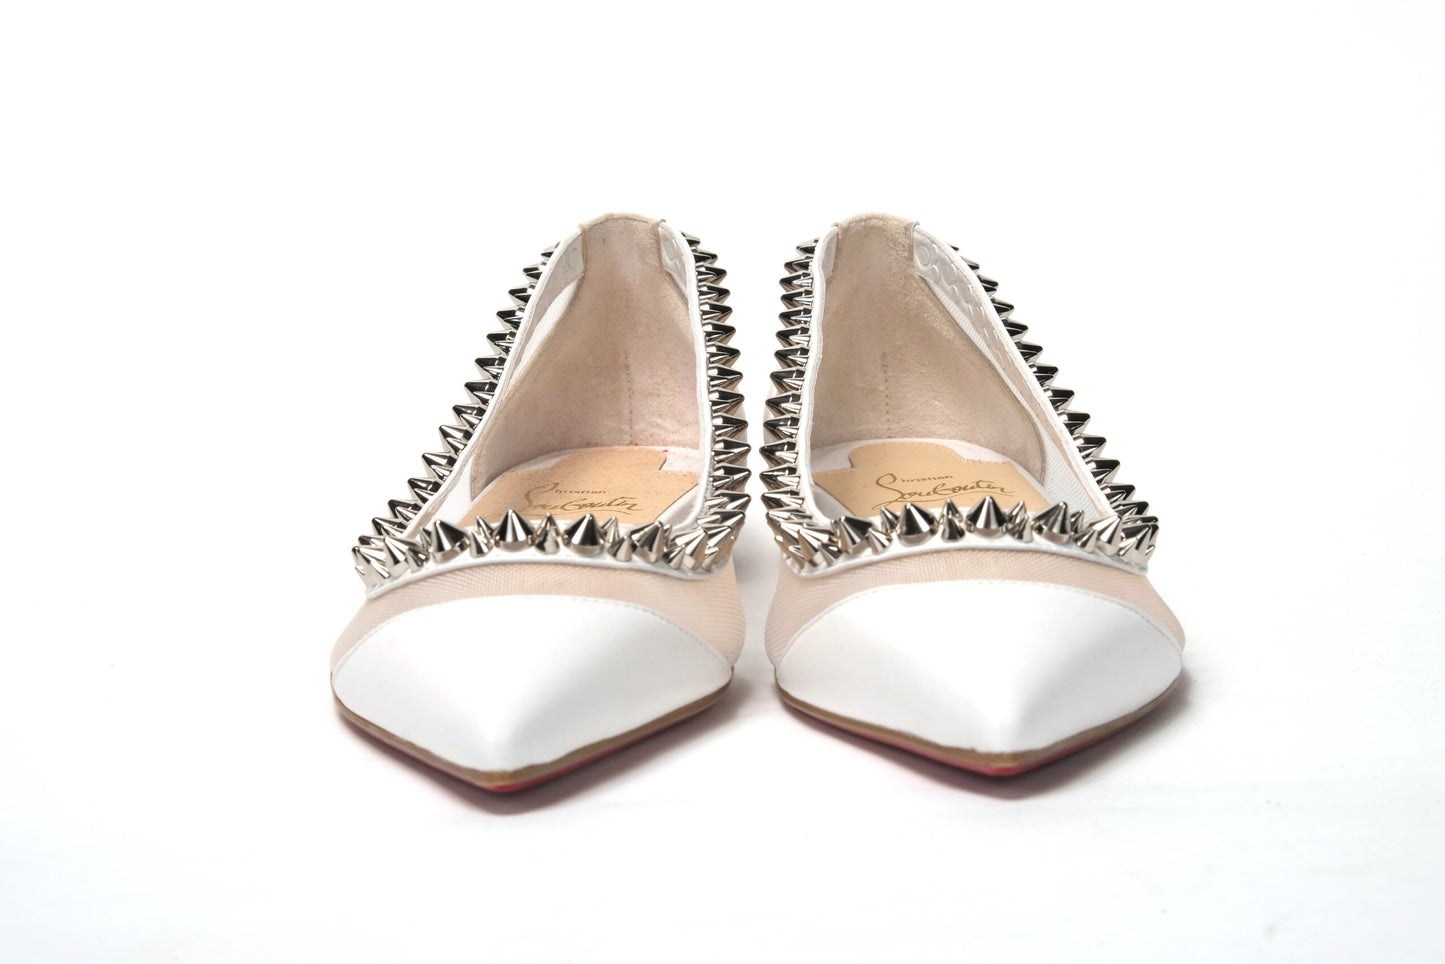 حذاء كريستيان لوبوتان بيانكو باللون الأبيض الفضي بمقدمة مسطحة